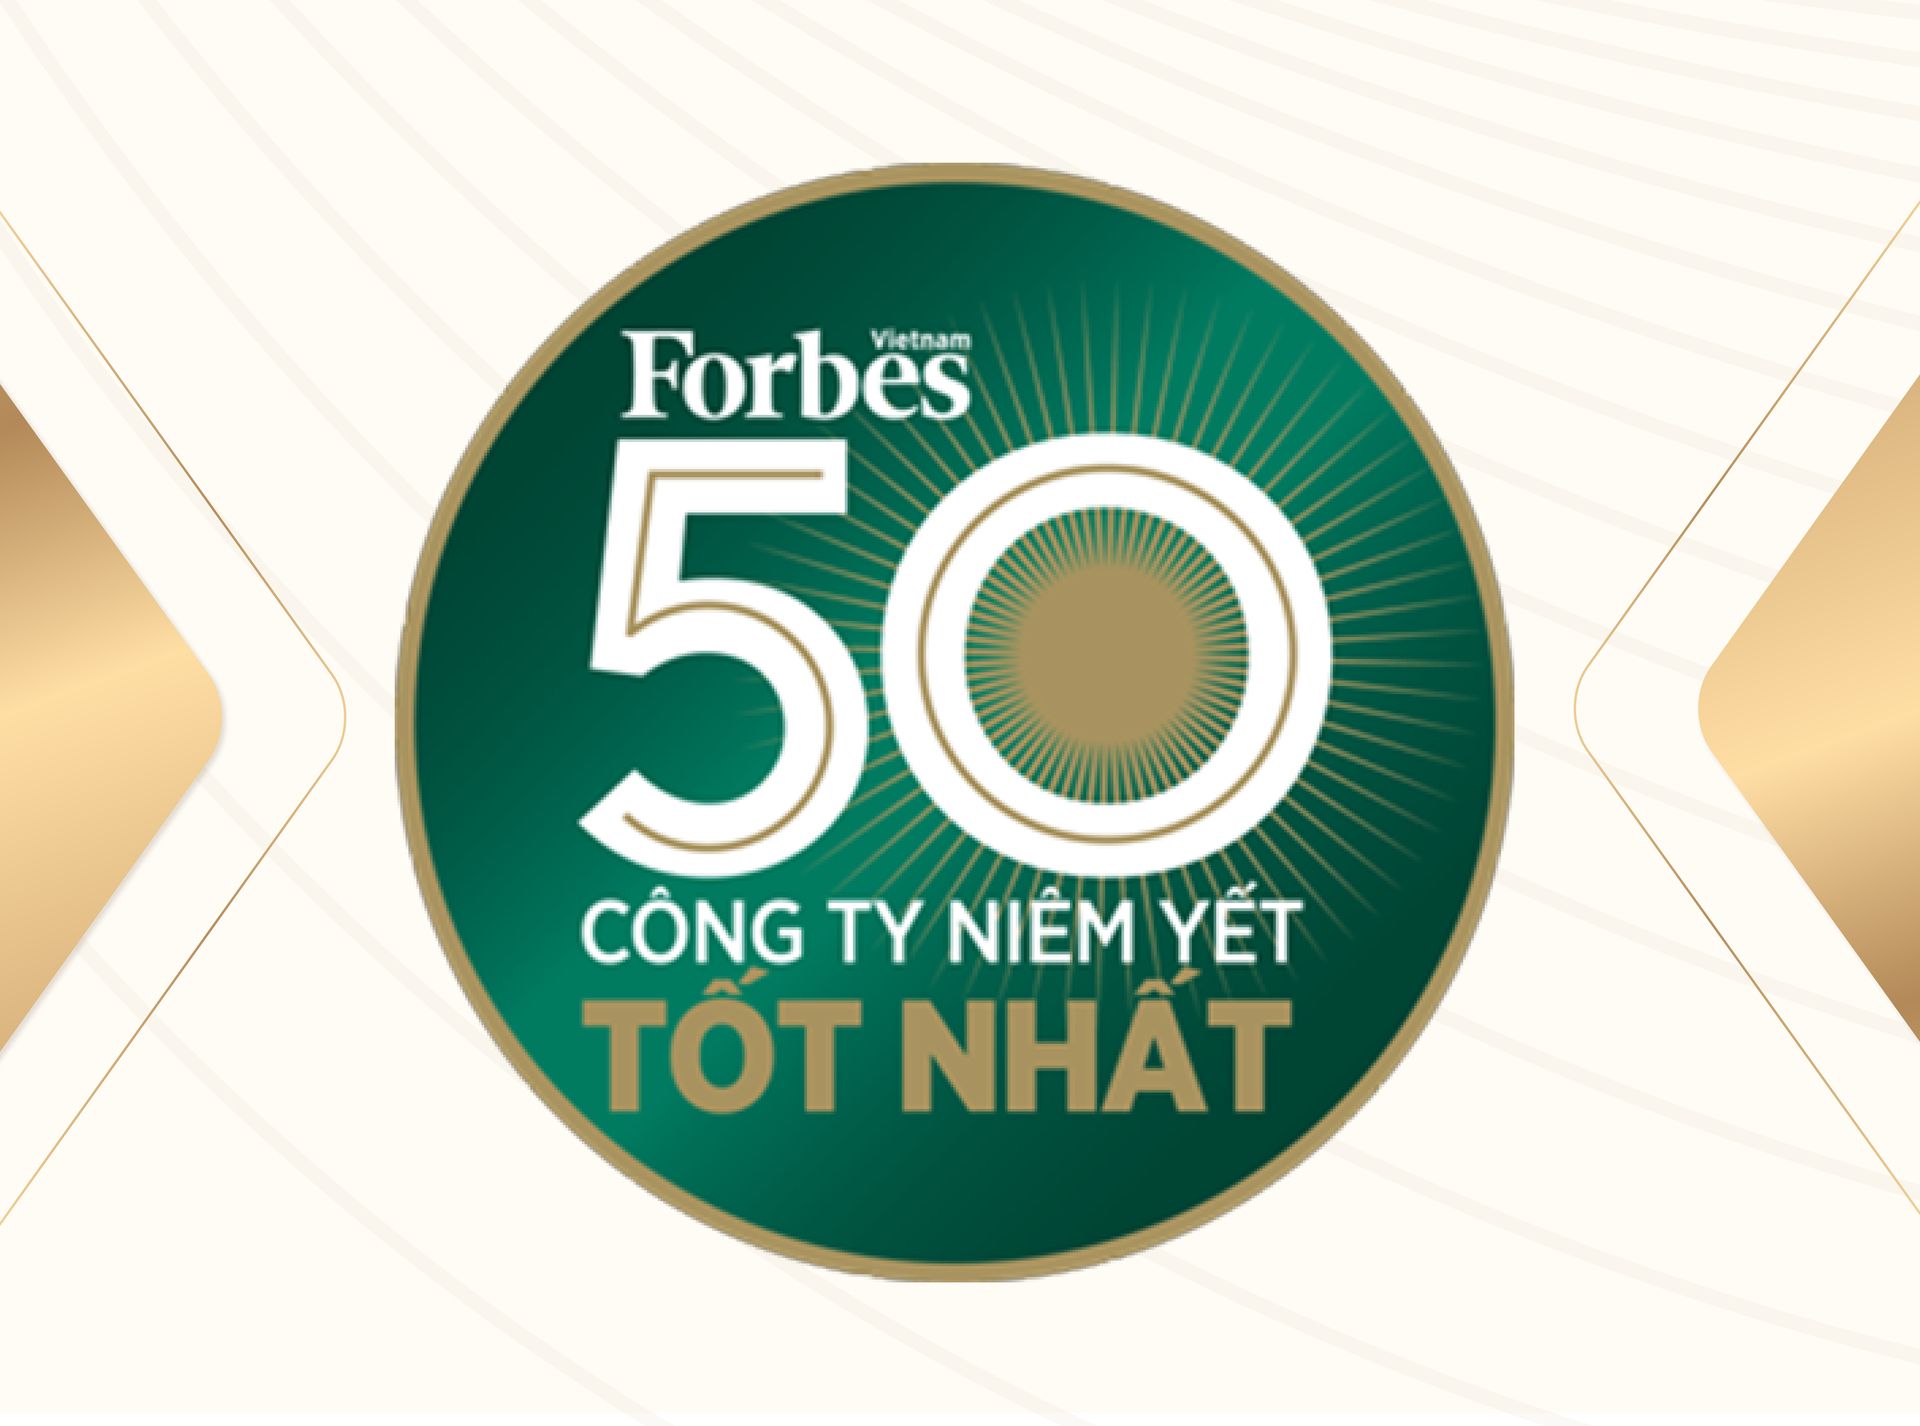 HSC - Top 50 Doanh nghiệp niêm yết do Forbes bình chọn